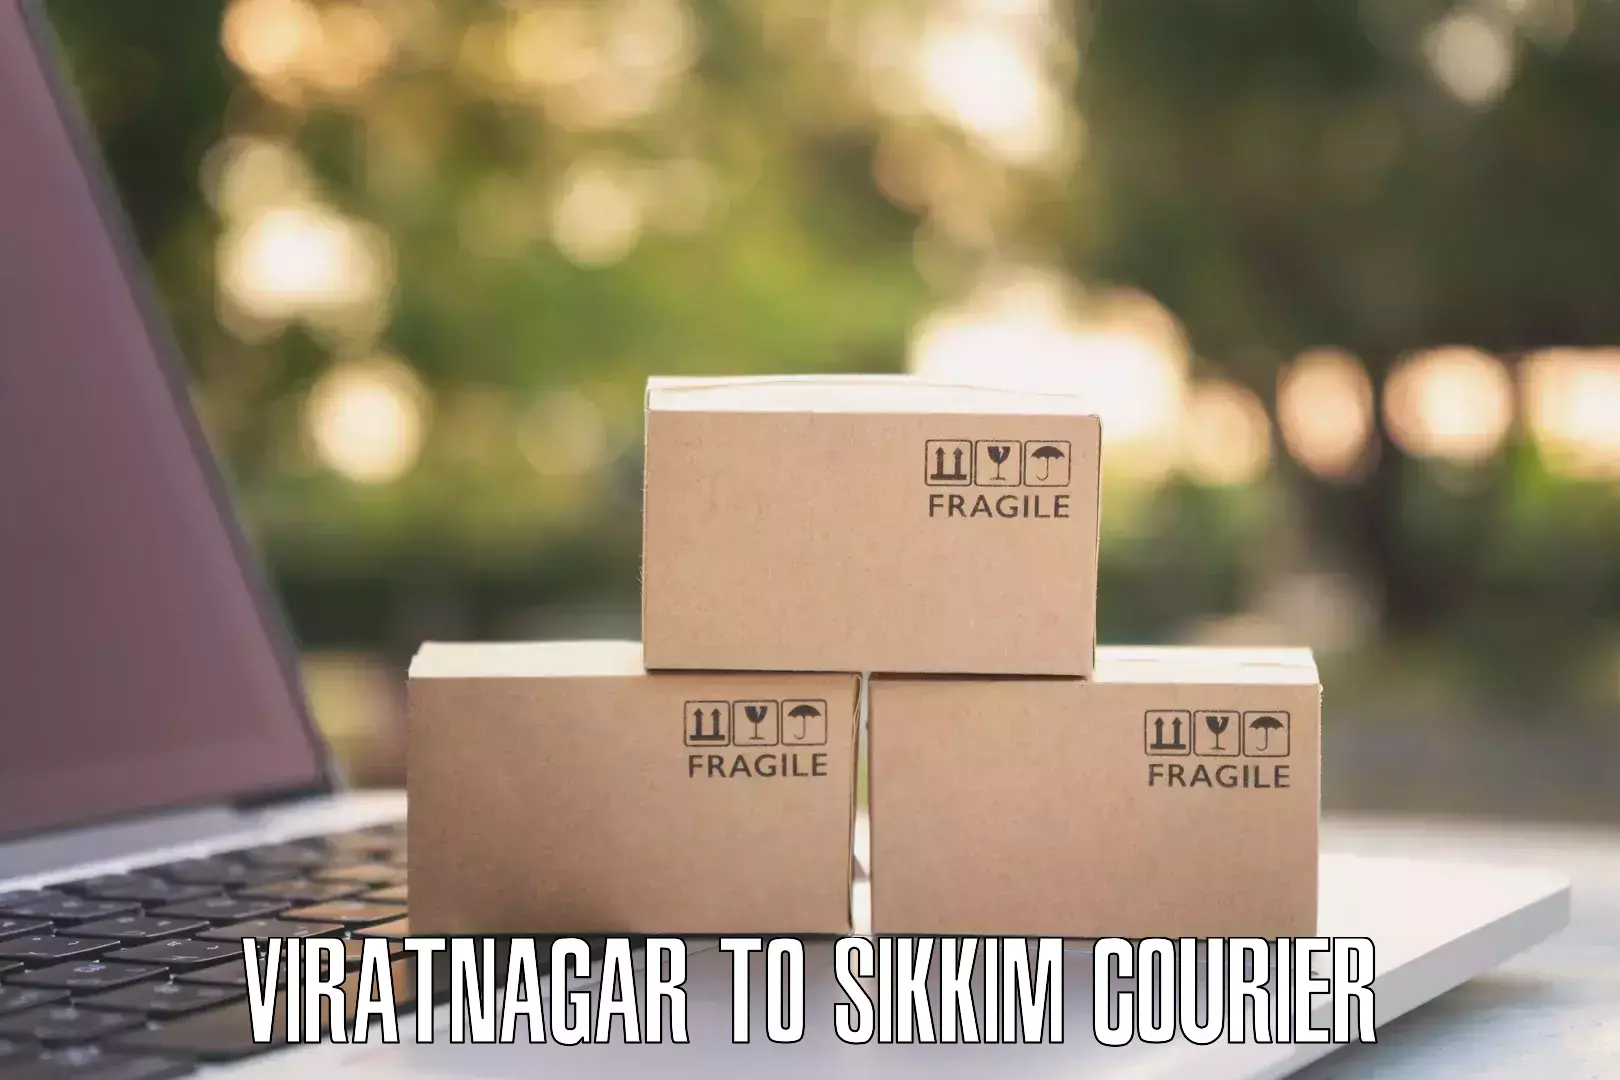 Cargo courier service Viratnagar to Namchi